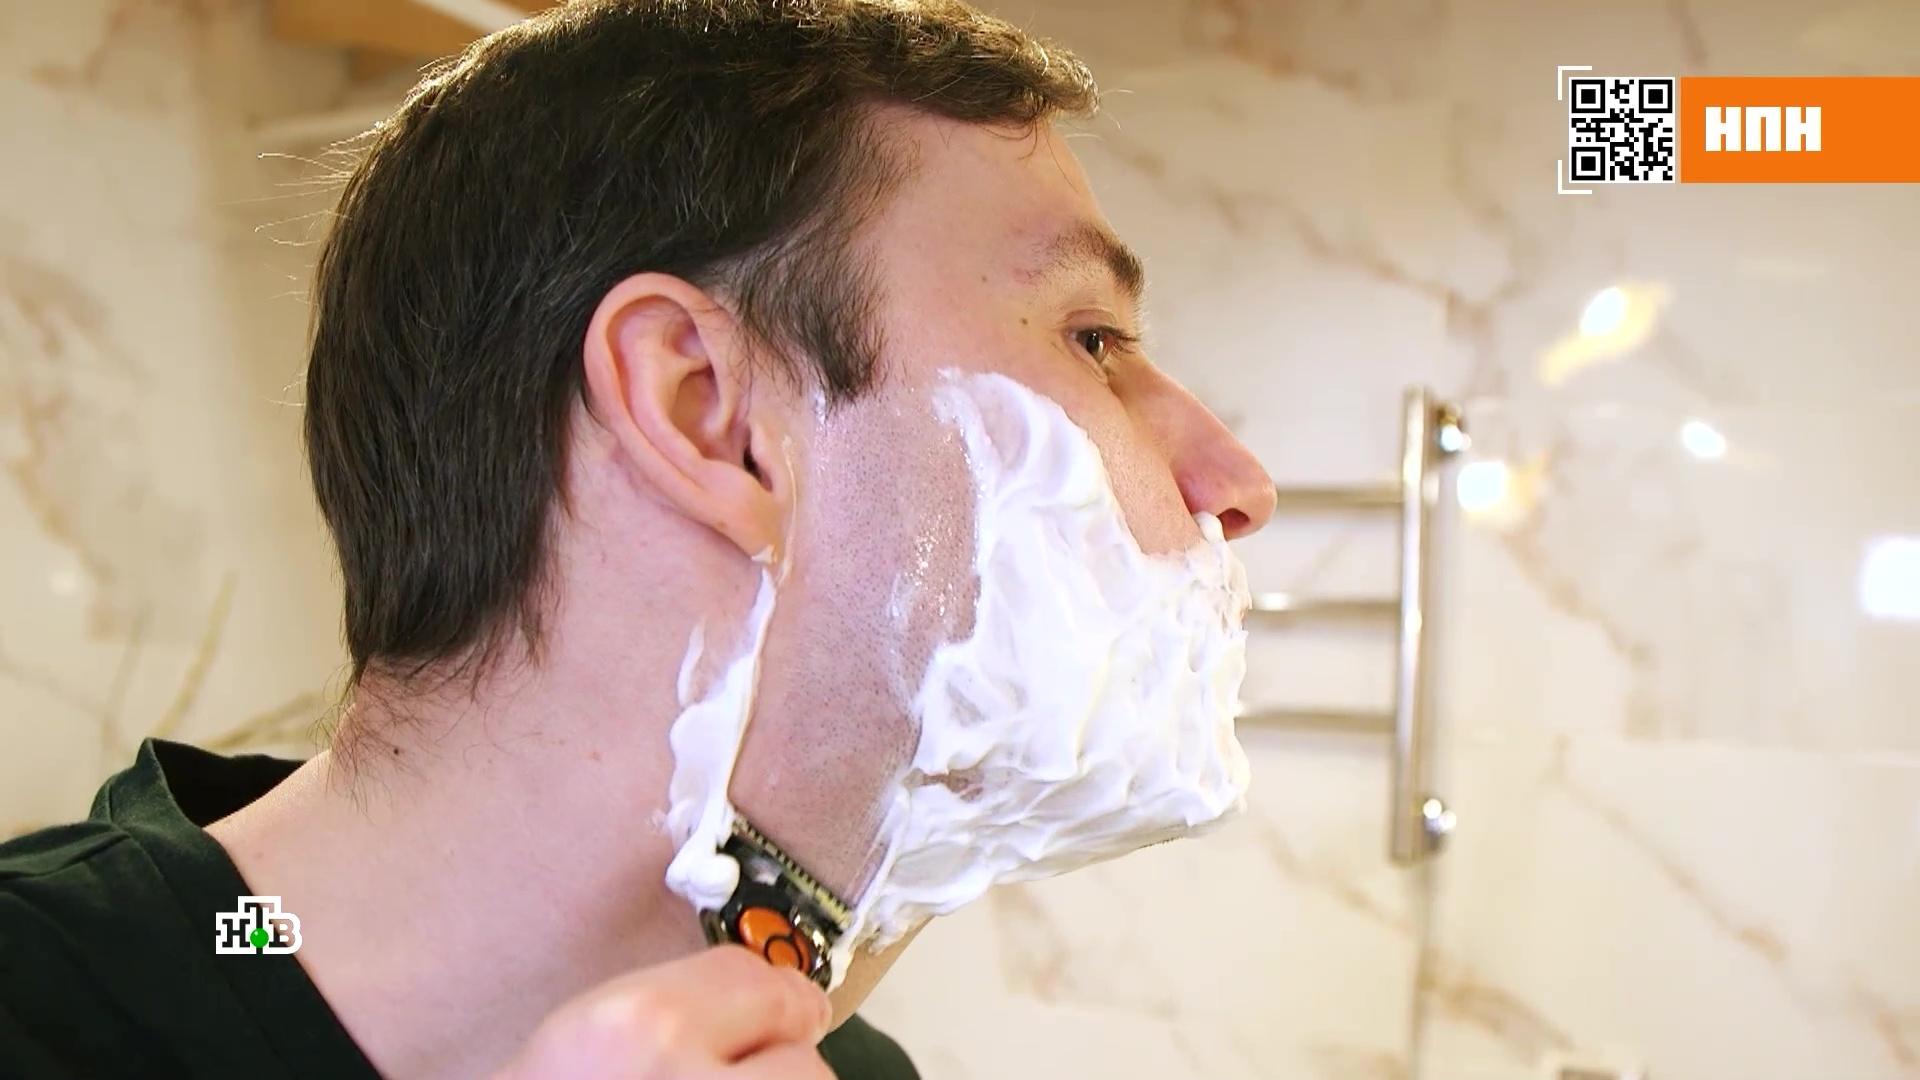 Борода из пены для бритья